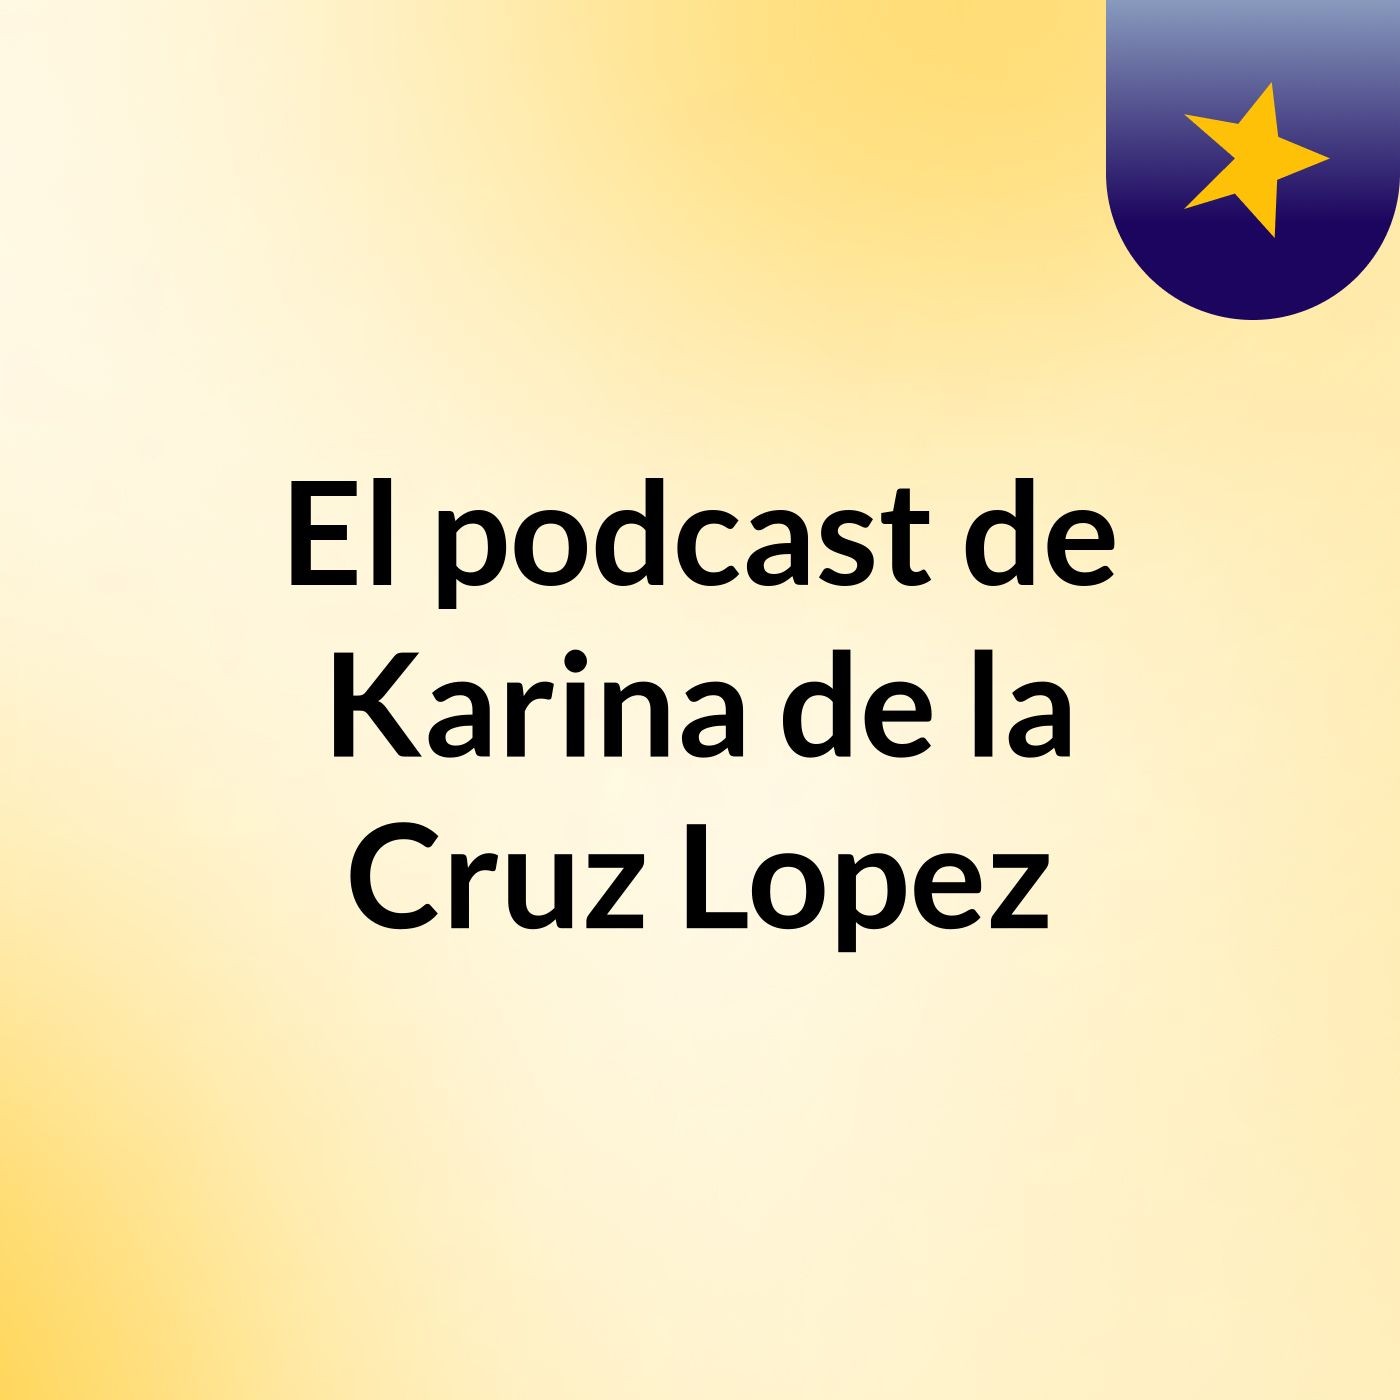 El podcast de Karina de la Cruz Lopez